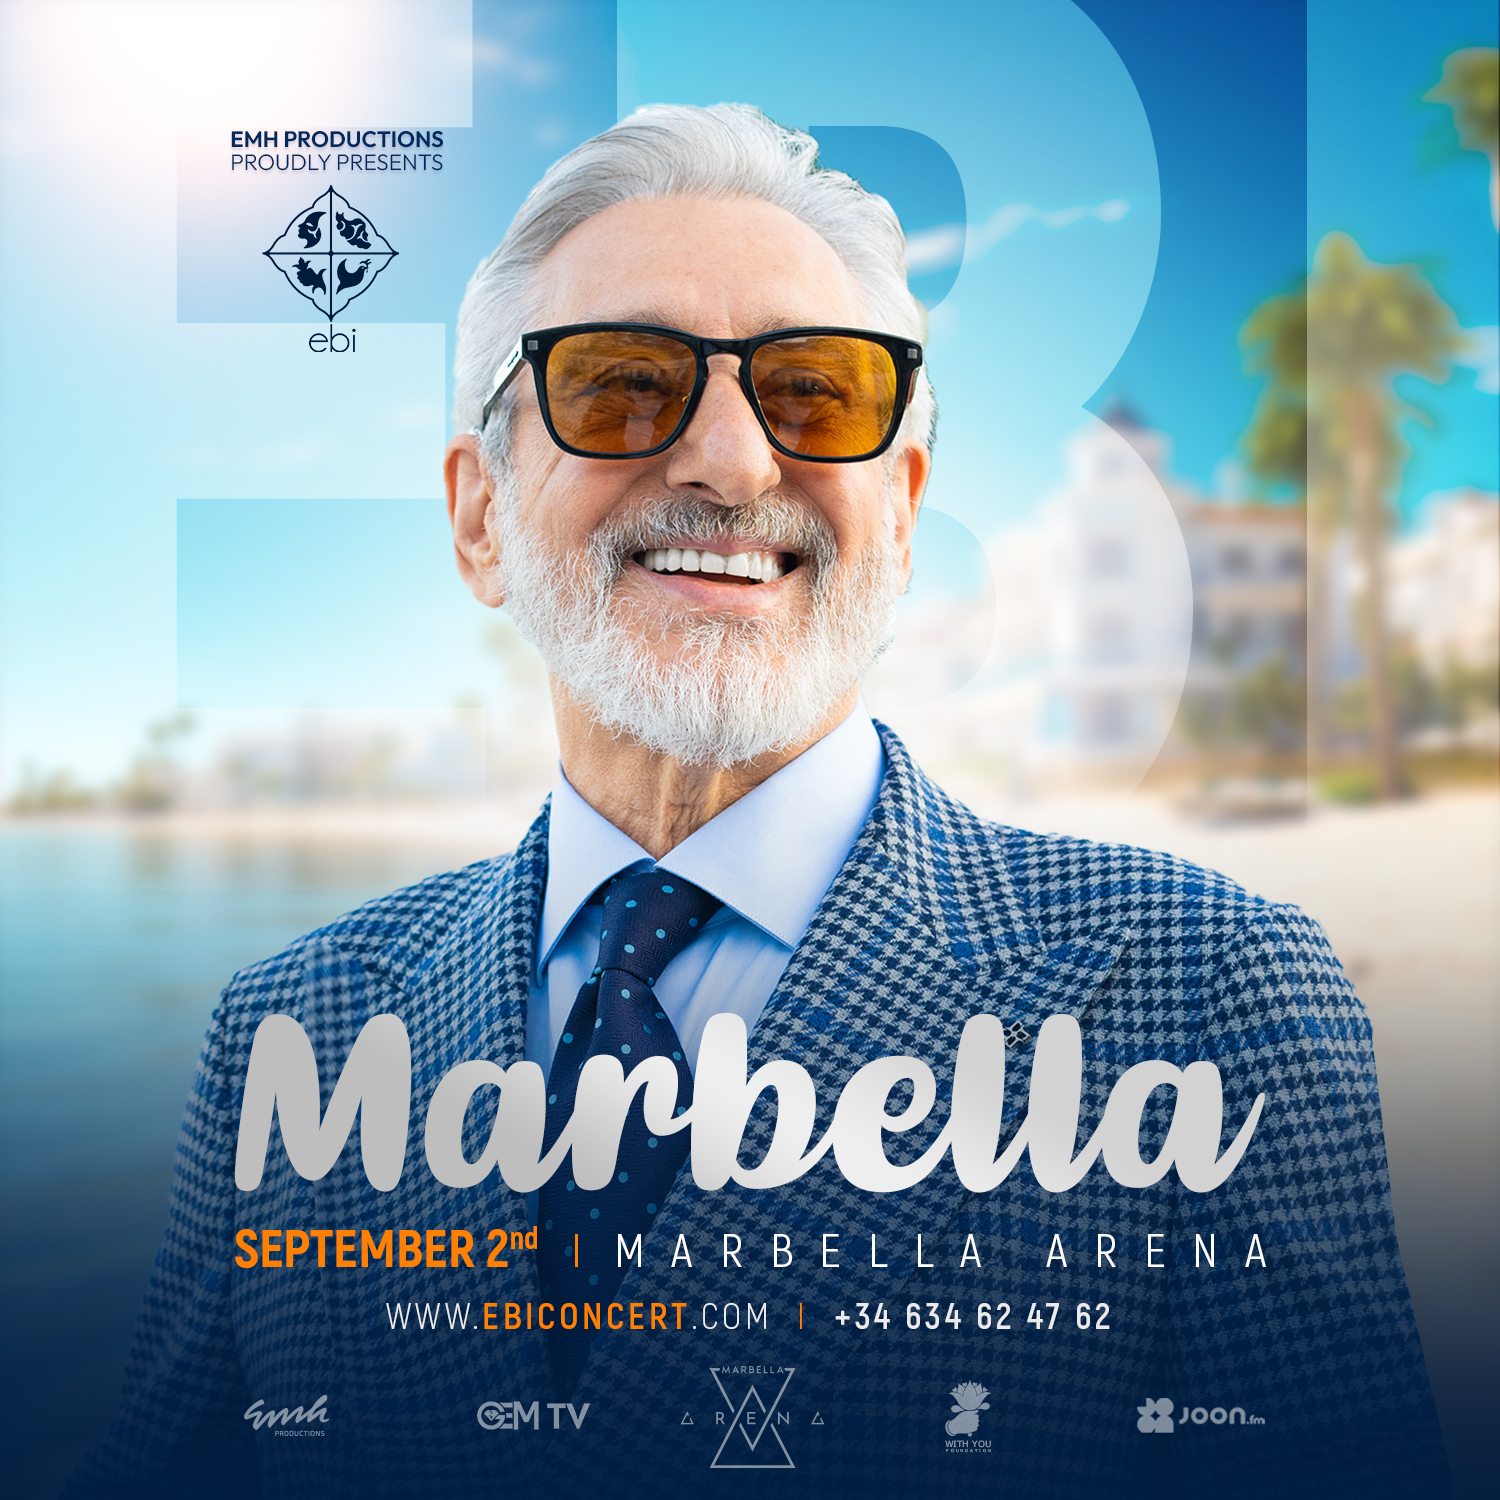 EBI EN DIRECTO EN MARBELLA-Marbella Arena